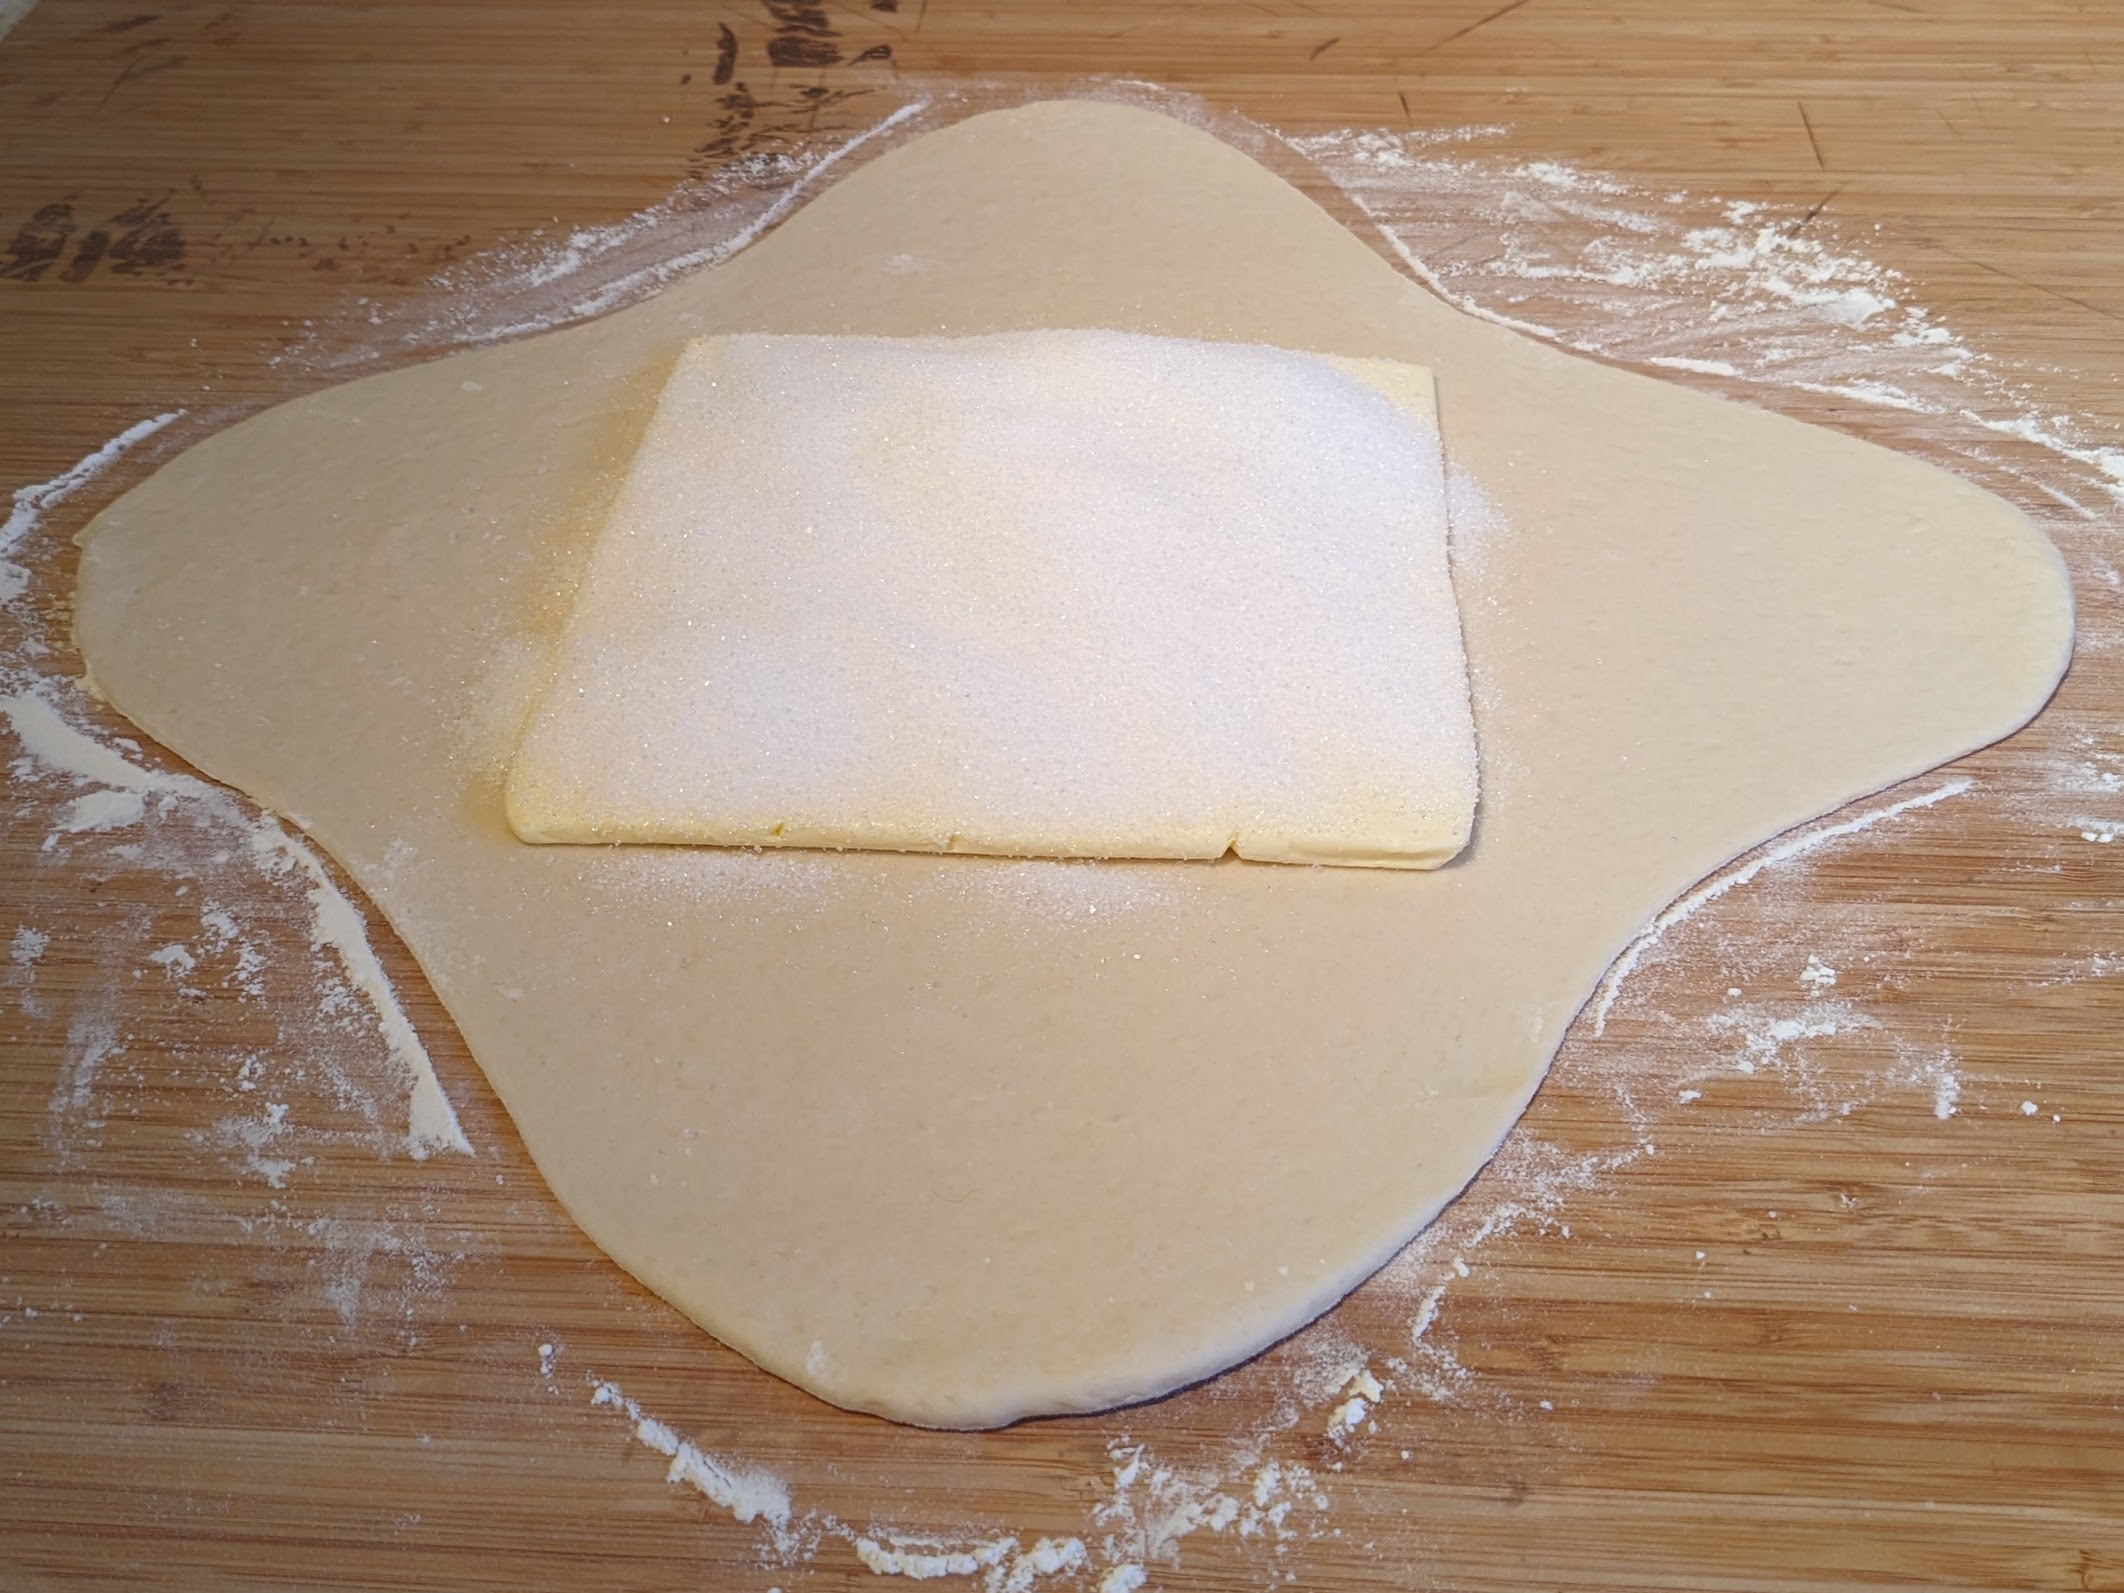 Pâte en croix avec une plaque de beurre au centre de la croix, recouverte de sucre